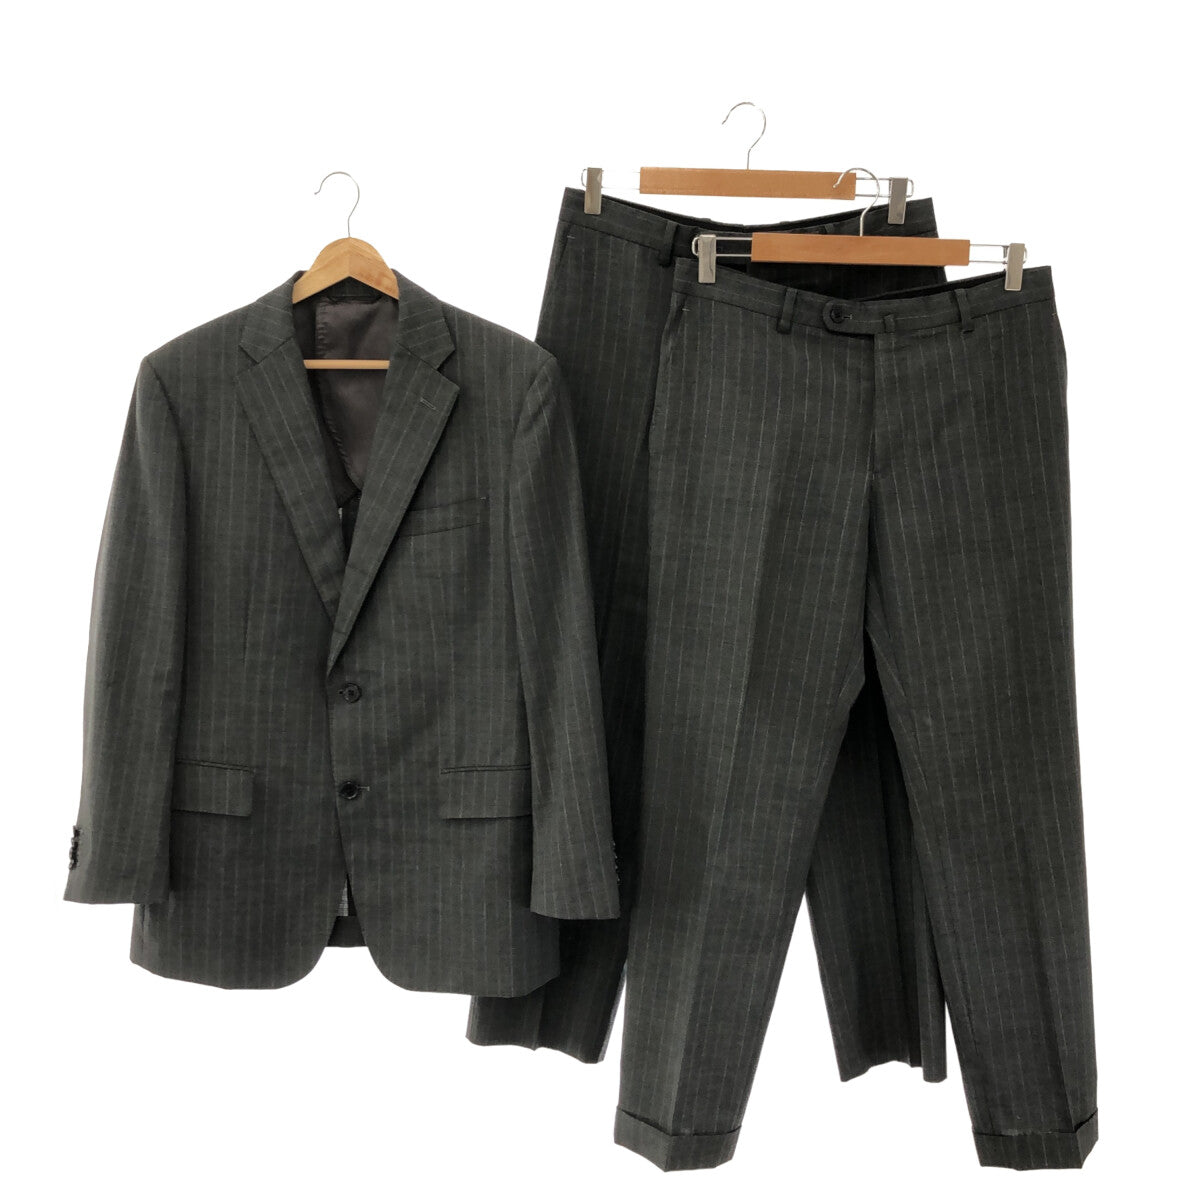 The Suit Company / ザ・スーツカンパニー | 3ピース セットアップ 2B ジャケット / スラックスパンツ | 170 | グレー | メンズ